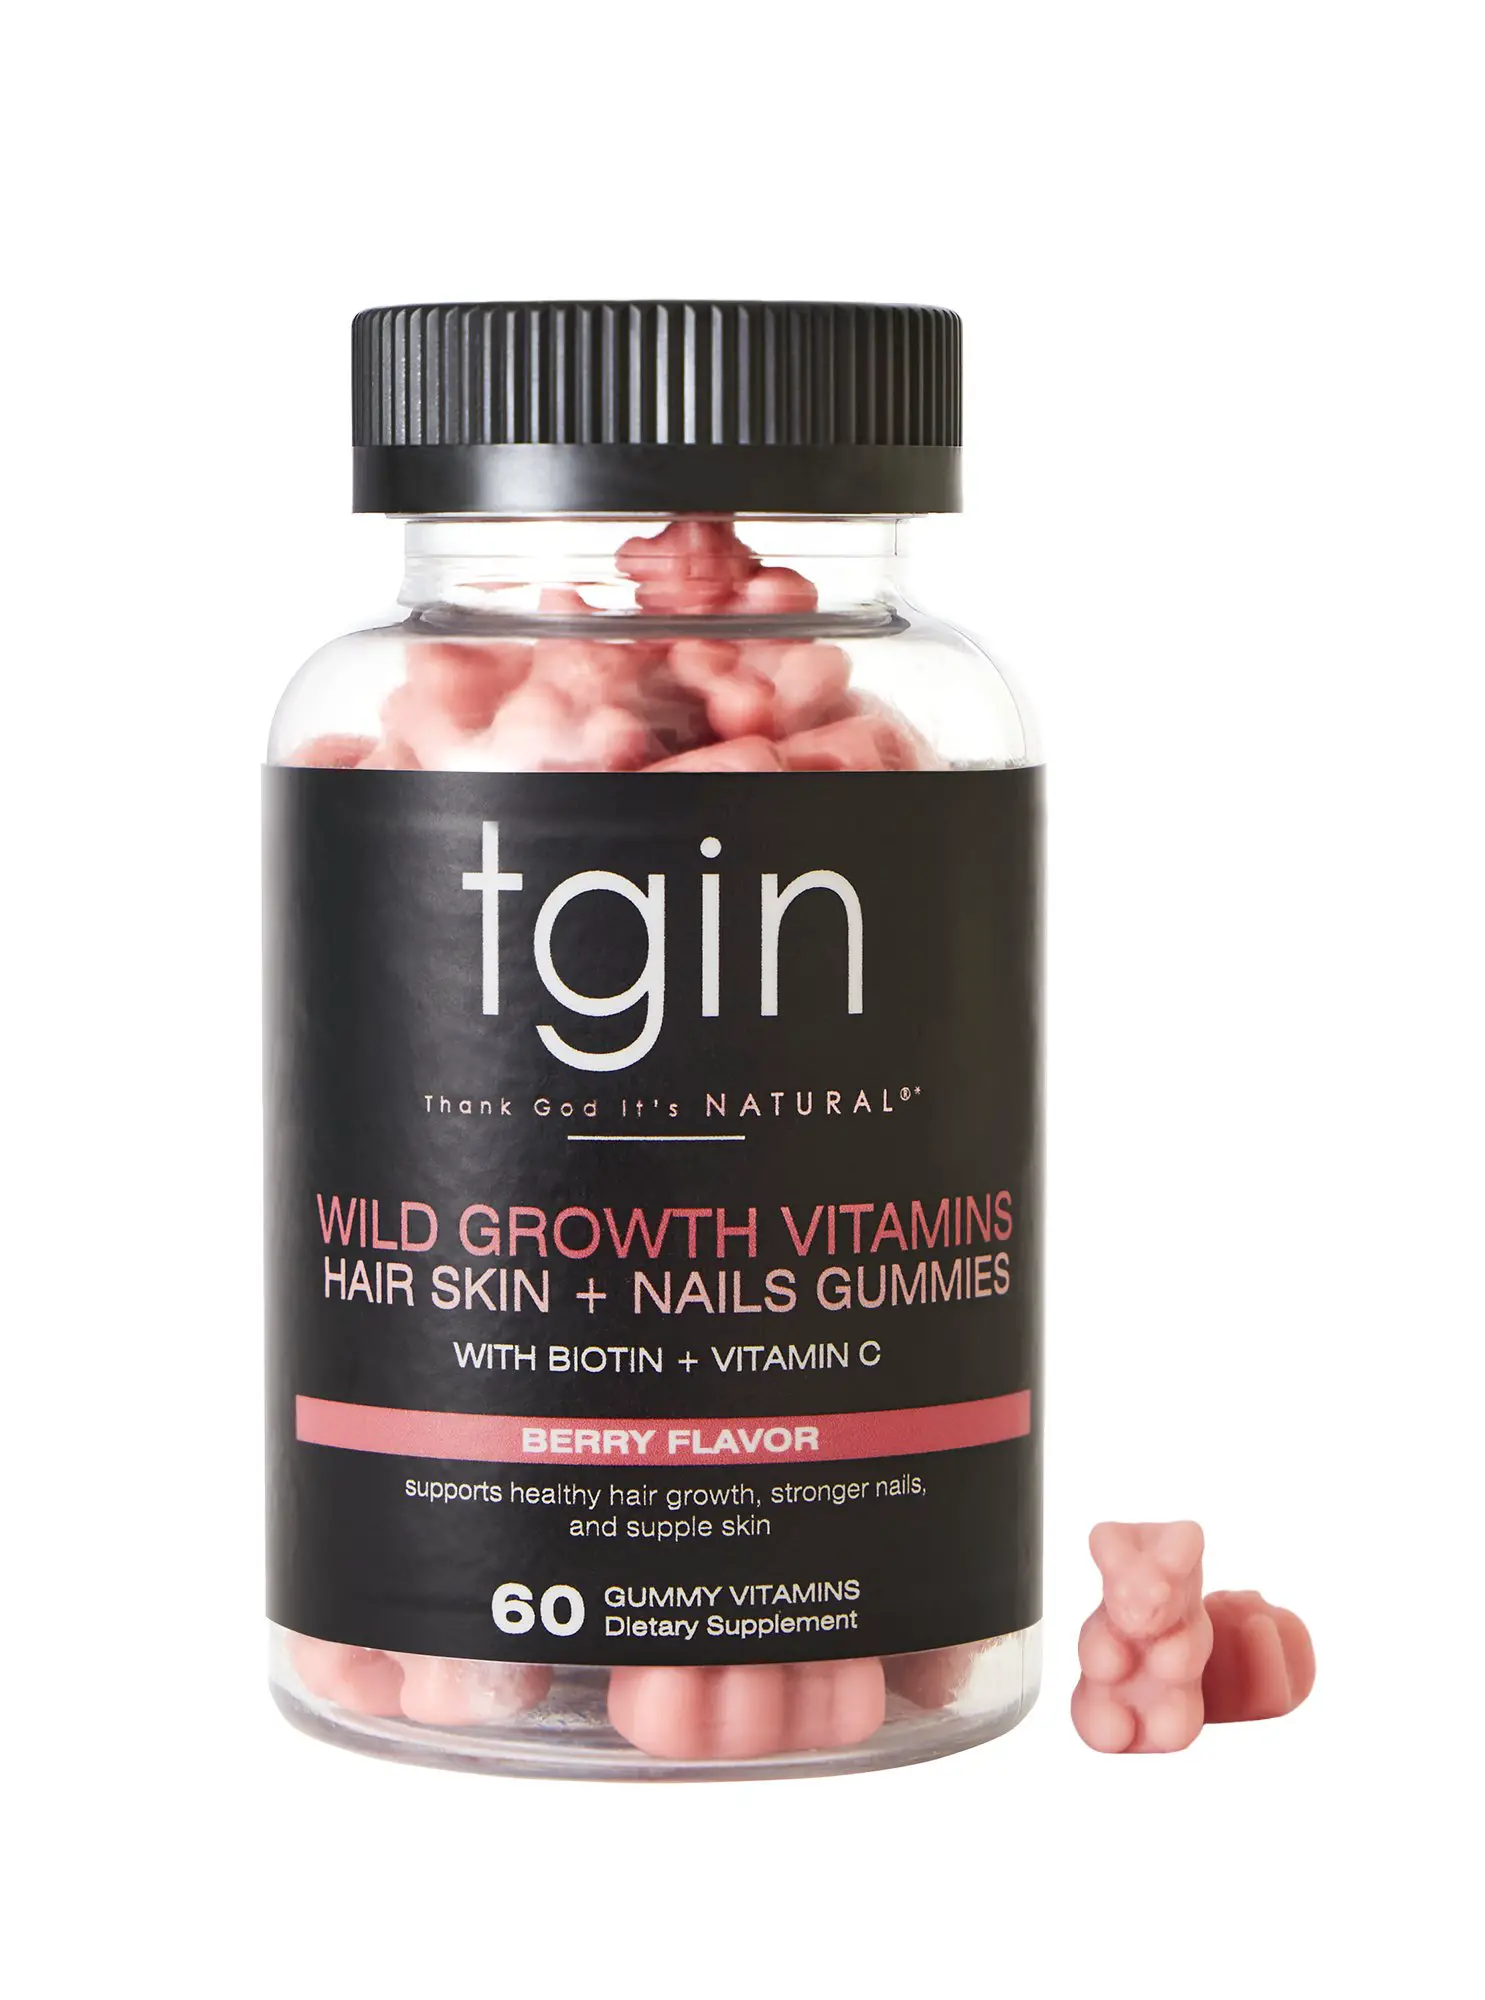 Wild Growth Vitamins Hair Skin + Nails Gummies